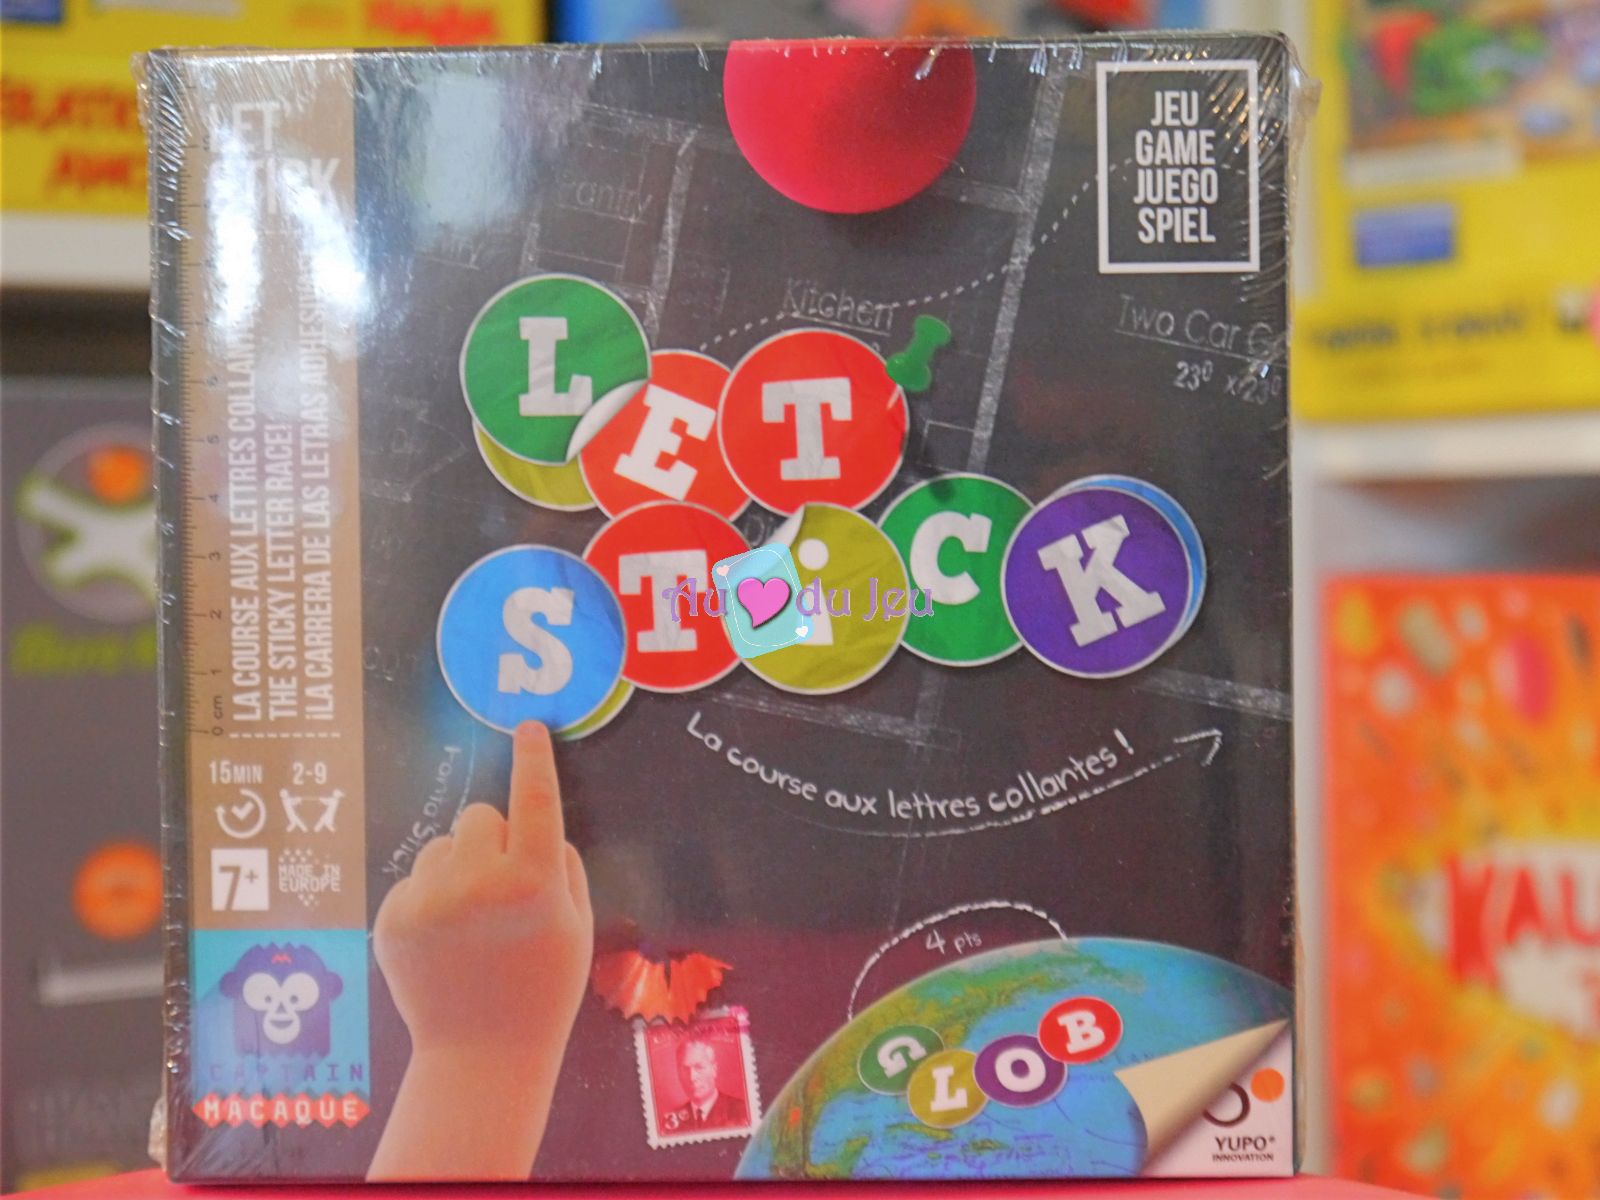 Let's Stick